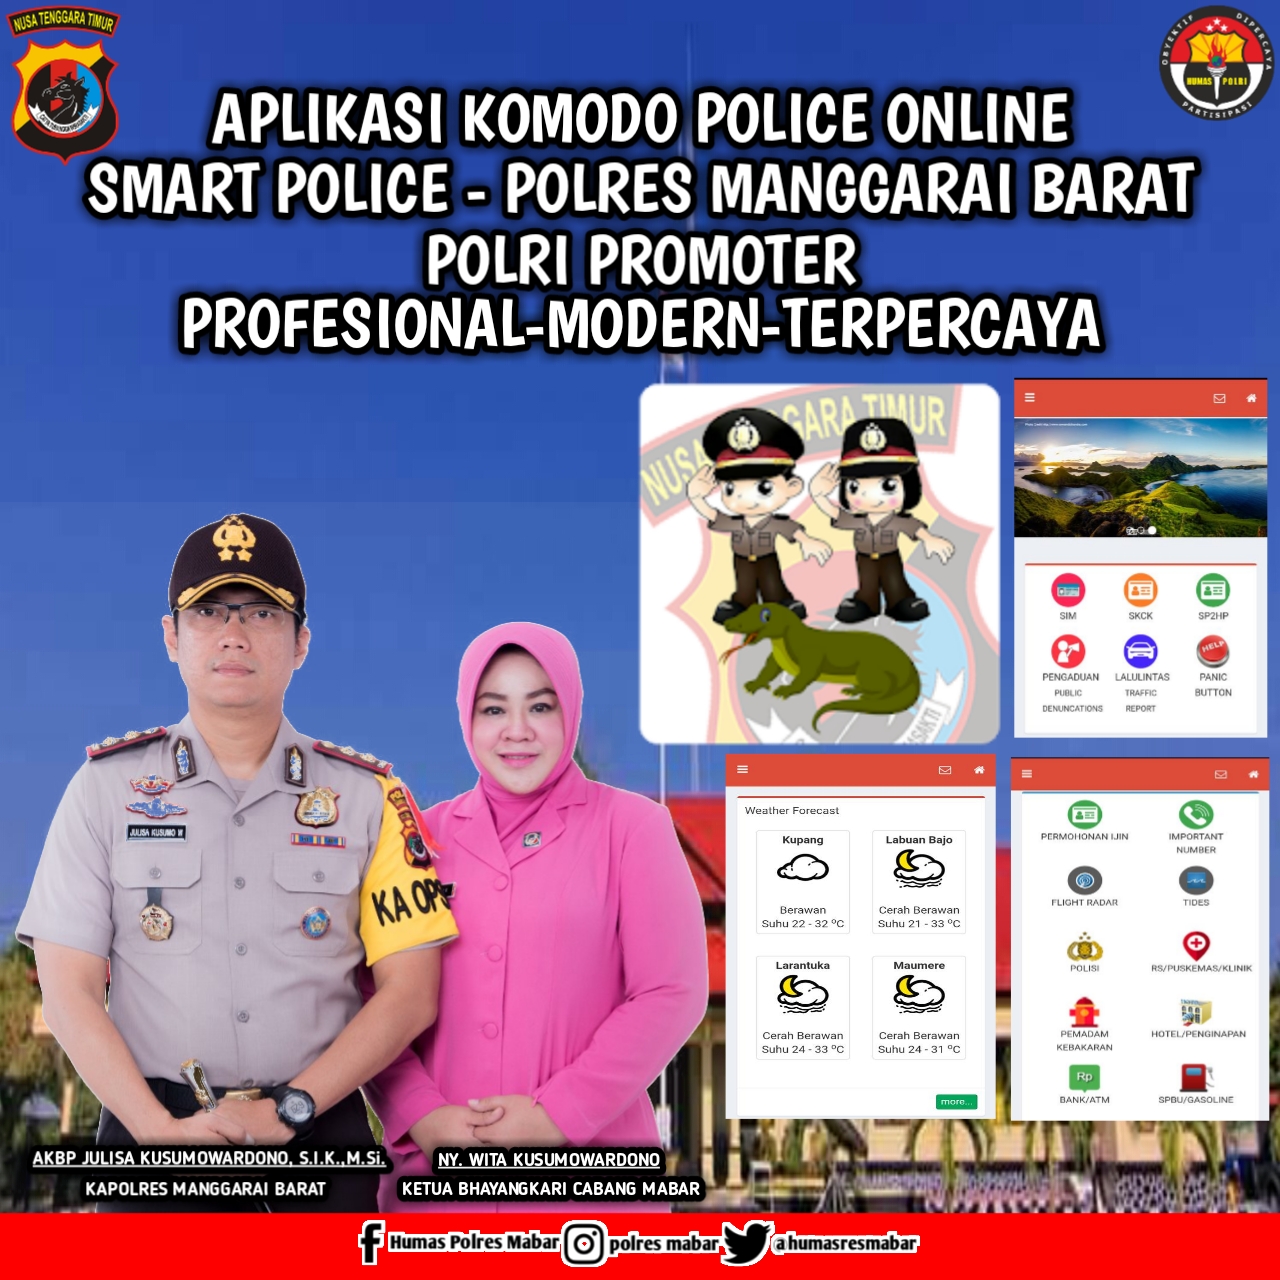 Lebih dekat dengan Masyarakat, Polres Manggarai Barat luncurkan Aplikasi Komodo Police Online